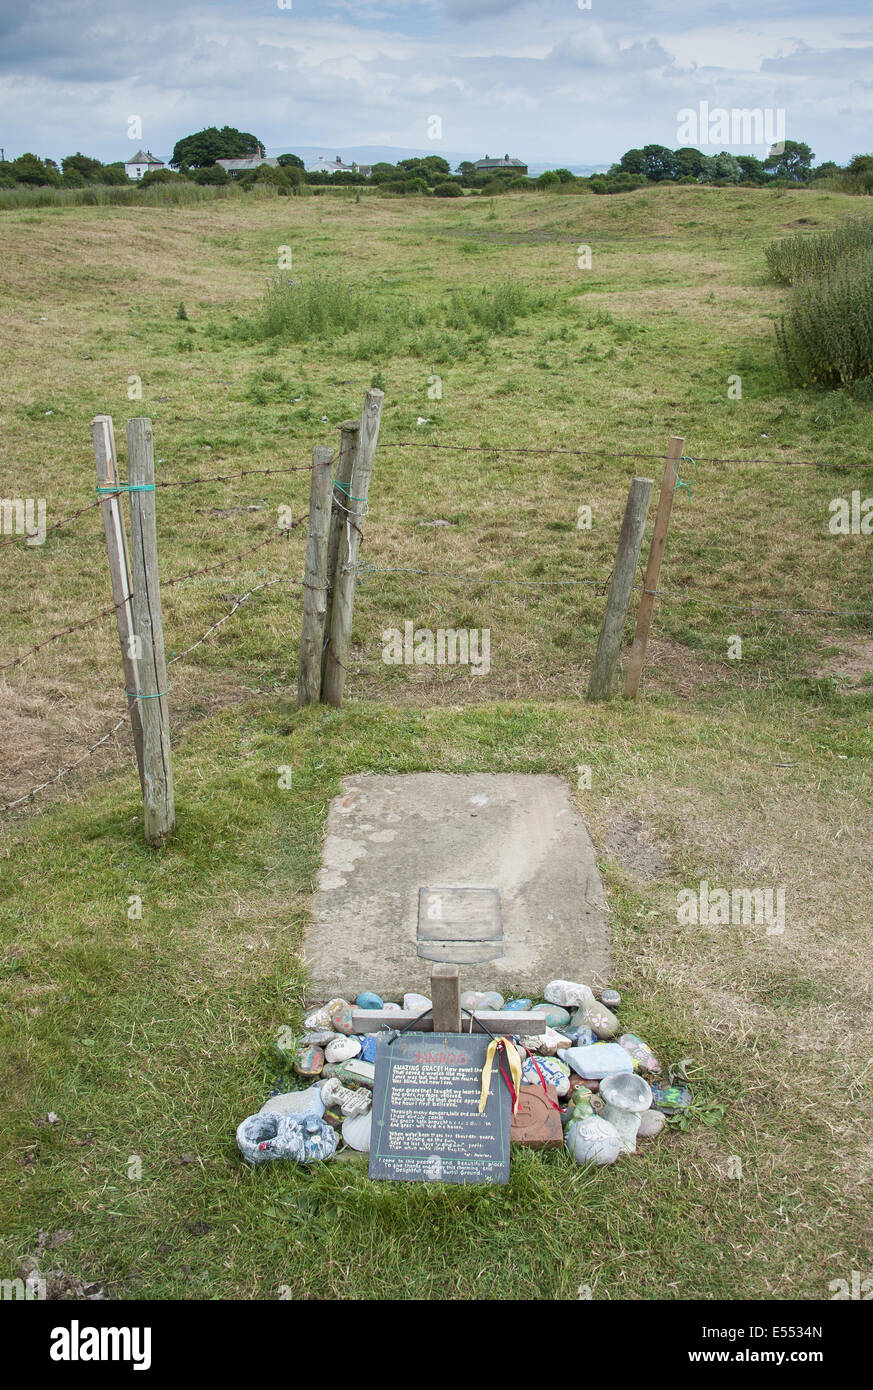 Grabstätte von Slave auf ungeweihte Boden in der Nähe von Dorf an der Küste, nur Gemeinschaft auf U.K Festland abhängig von Gezeiten Zugang, Stockfoto